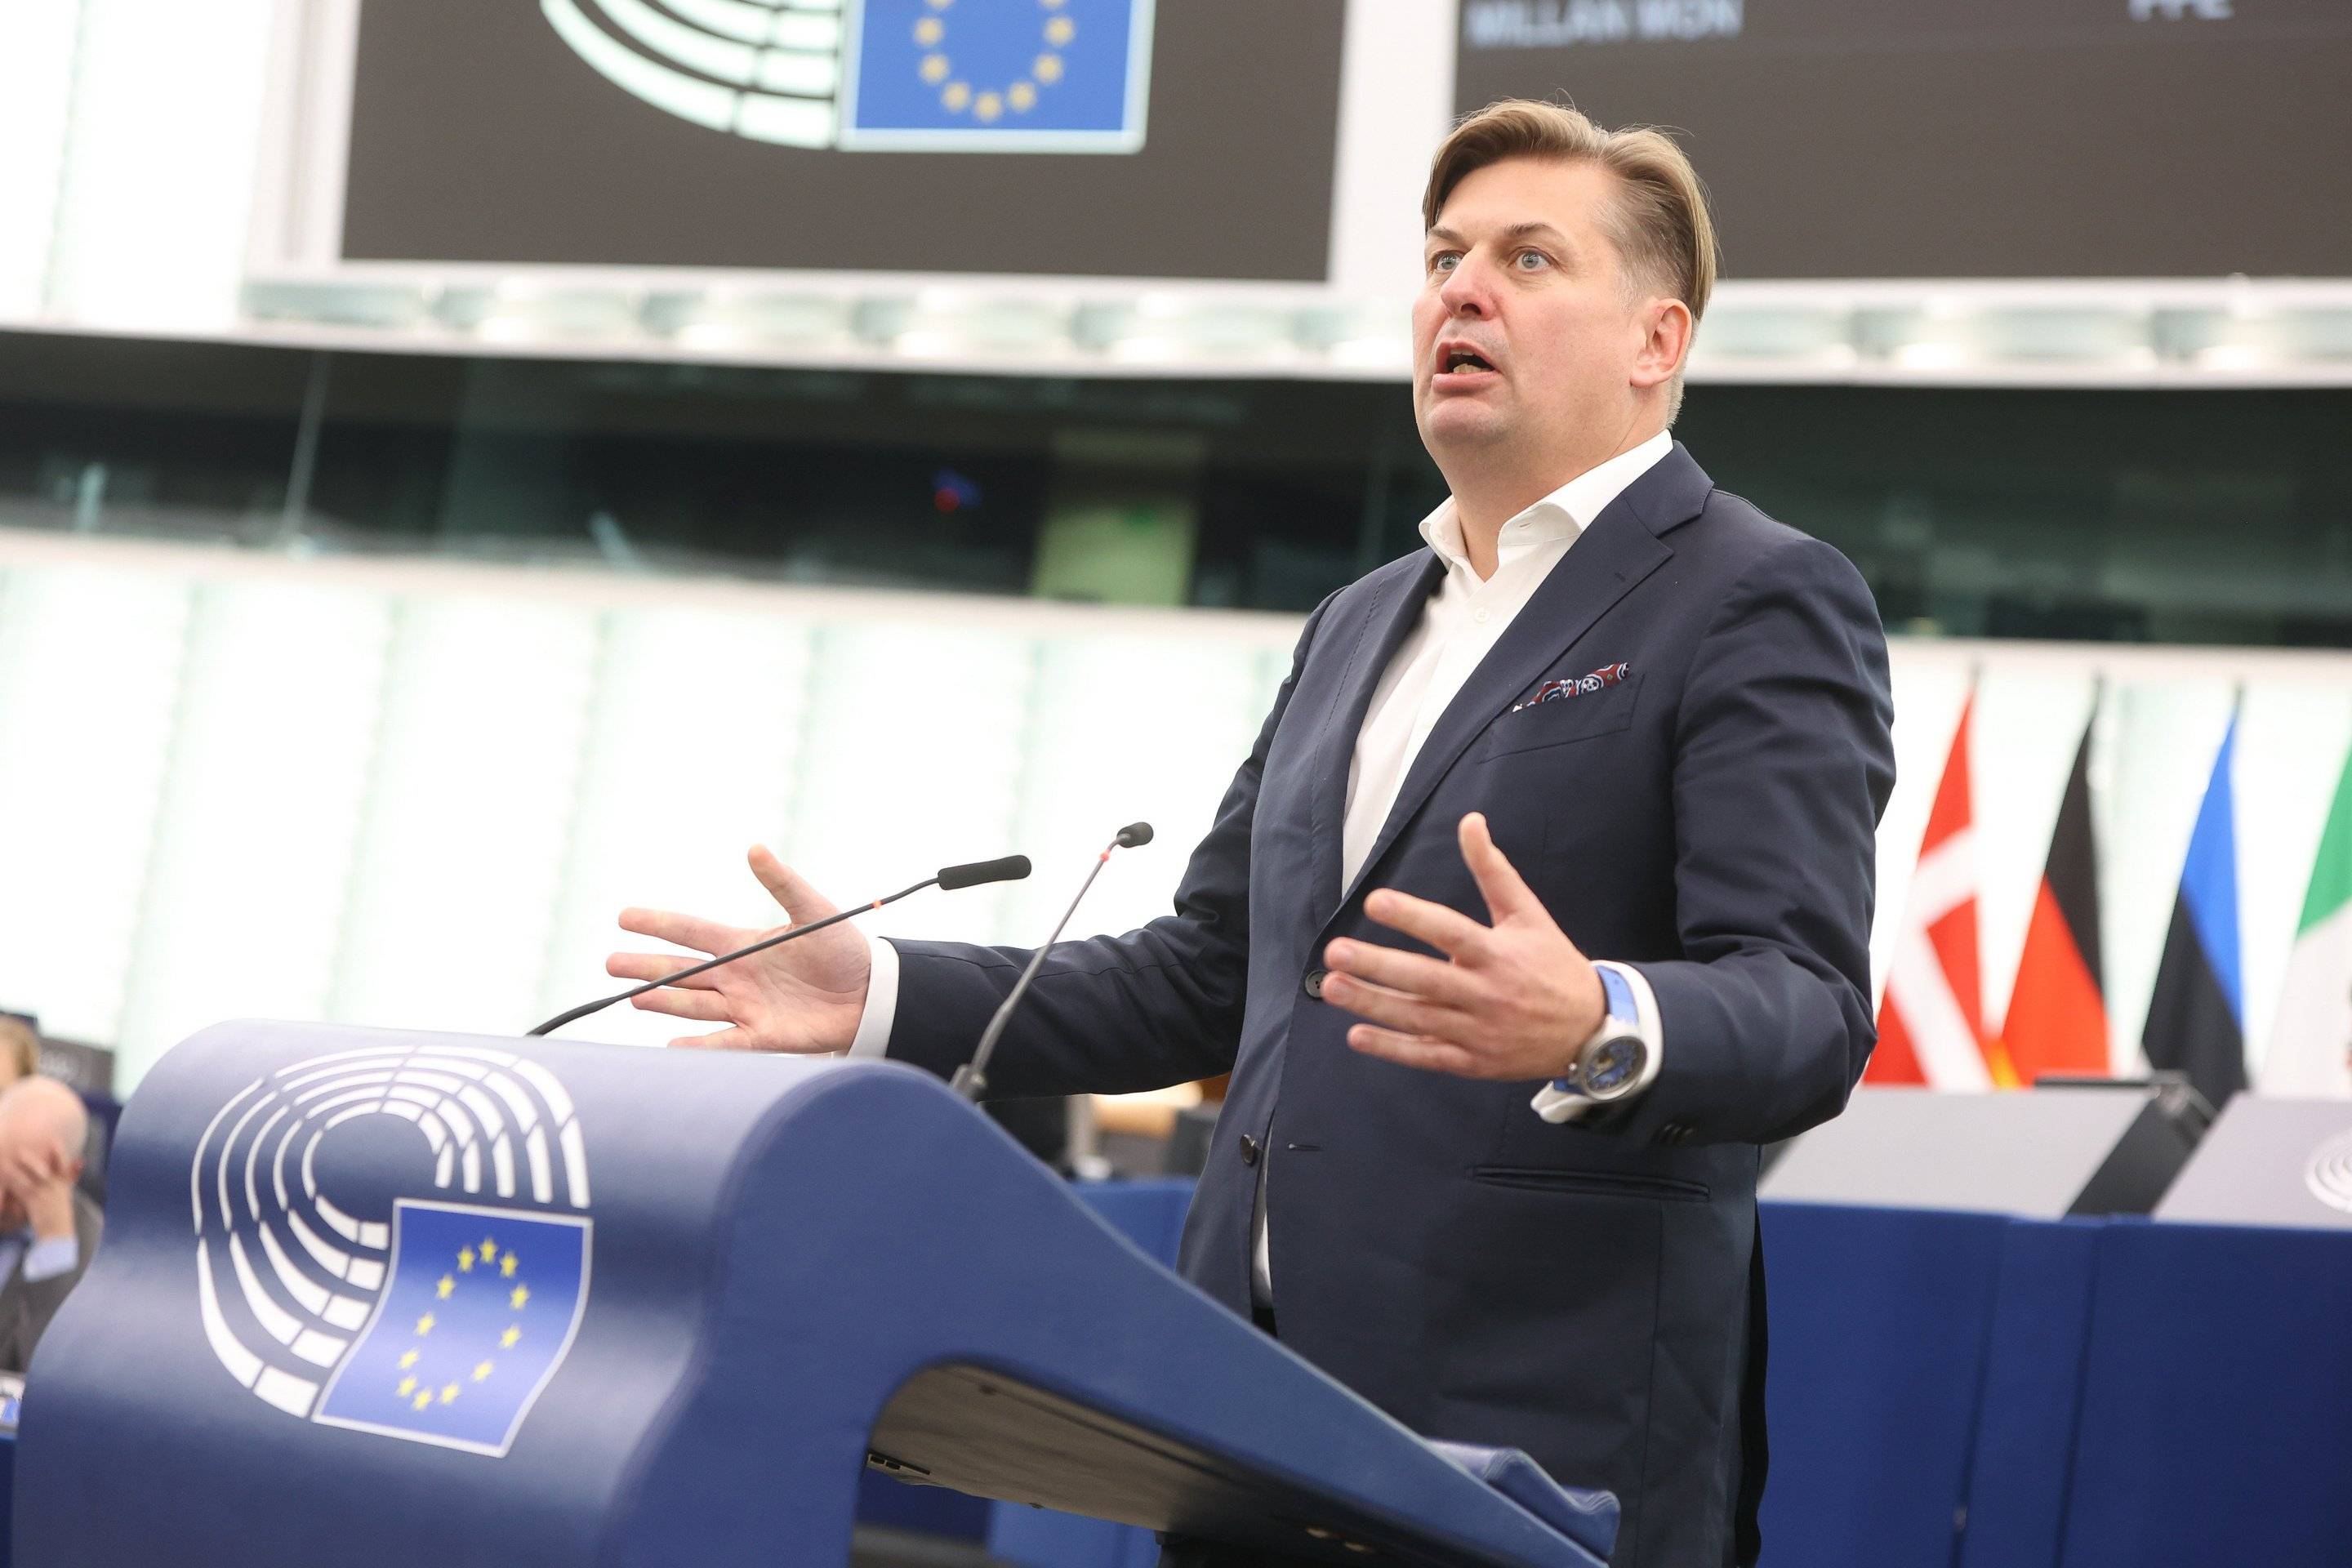 Mężczyzna w czarnej marynarce i białej koszuli bez krawata stoi na podium w sali plenarnej Parlamentu Europejskiego w Brukseli i energicznie gestykuluje. Jego twarz wyraża oburzenie, może zdziwienie